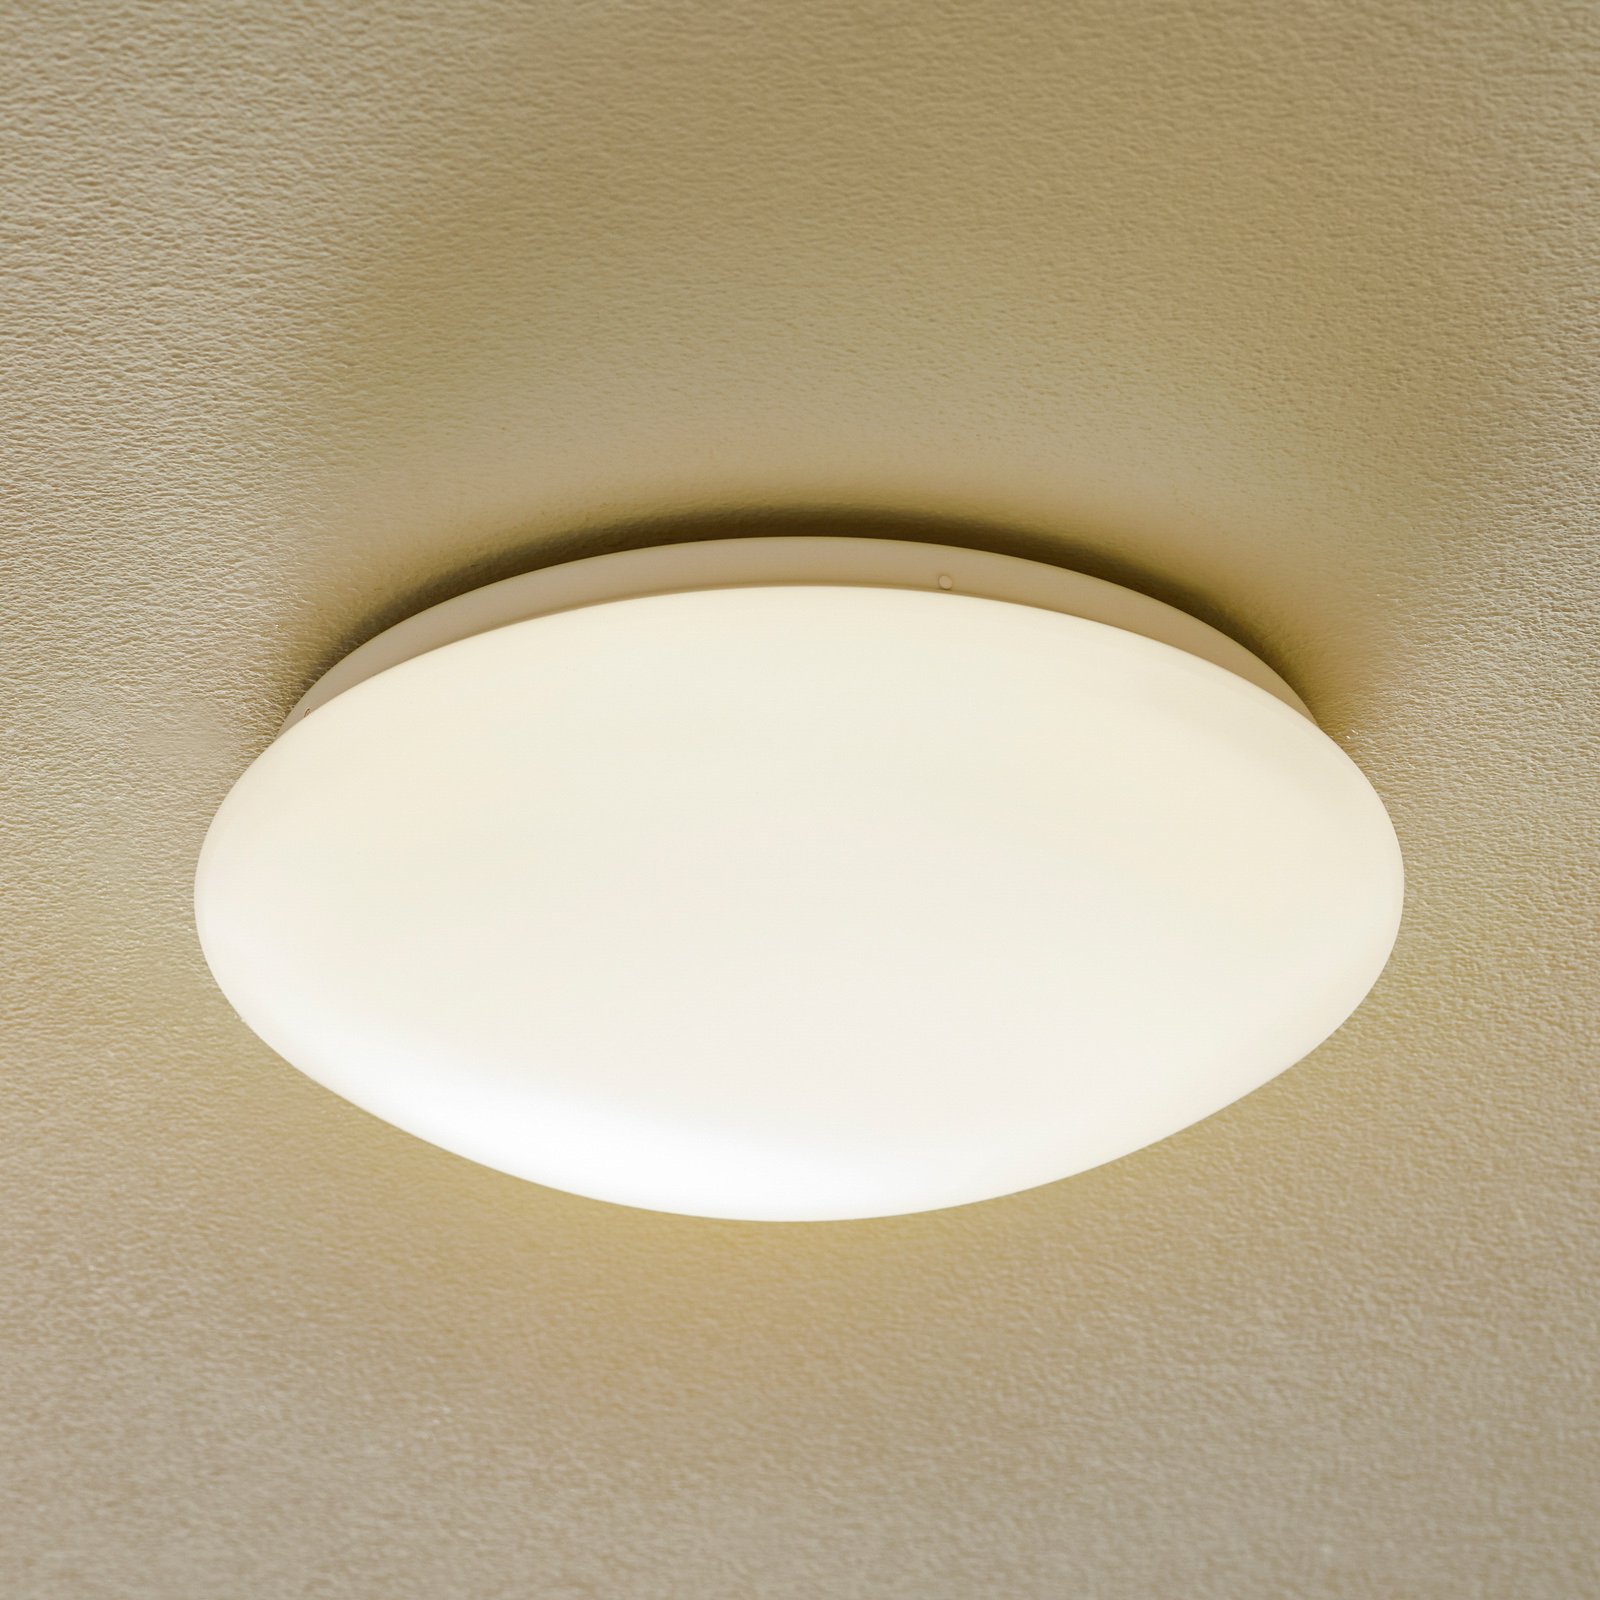 Paulmann Leonis LED ceiling light 3,000 K, Ø 28 cm